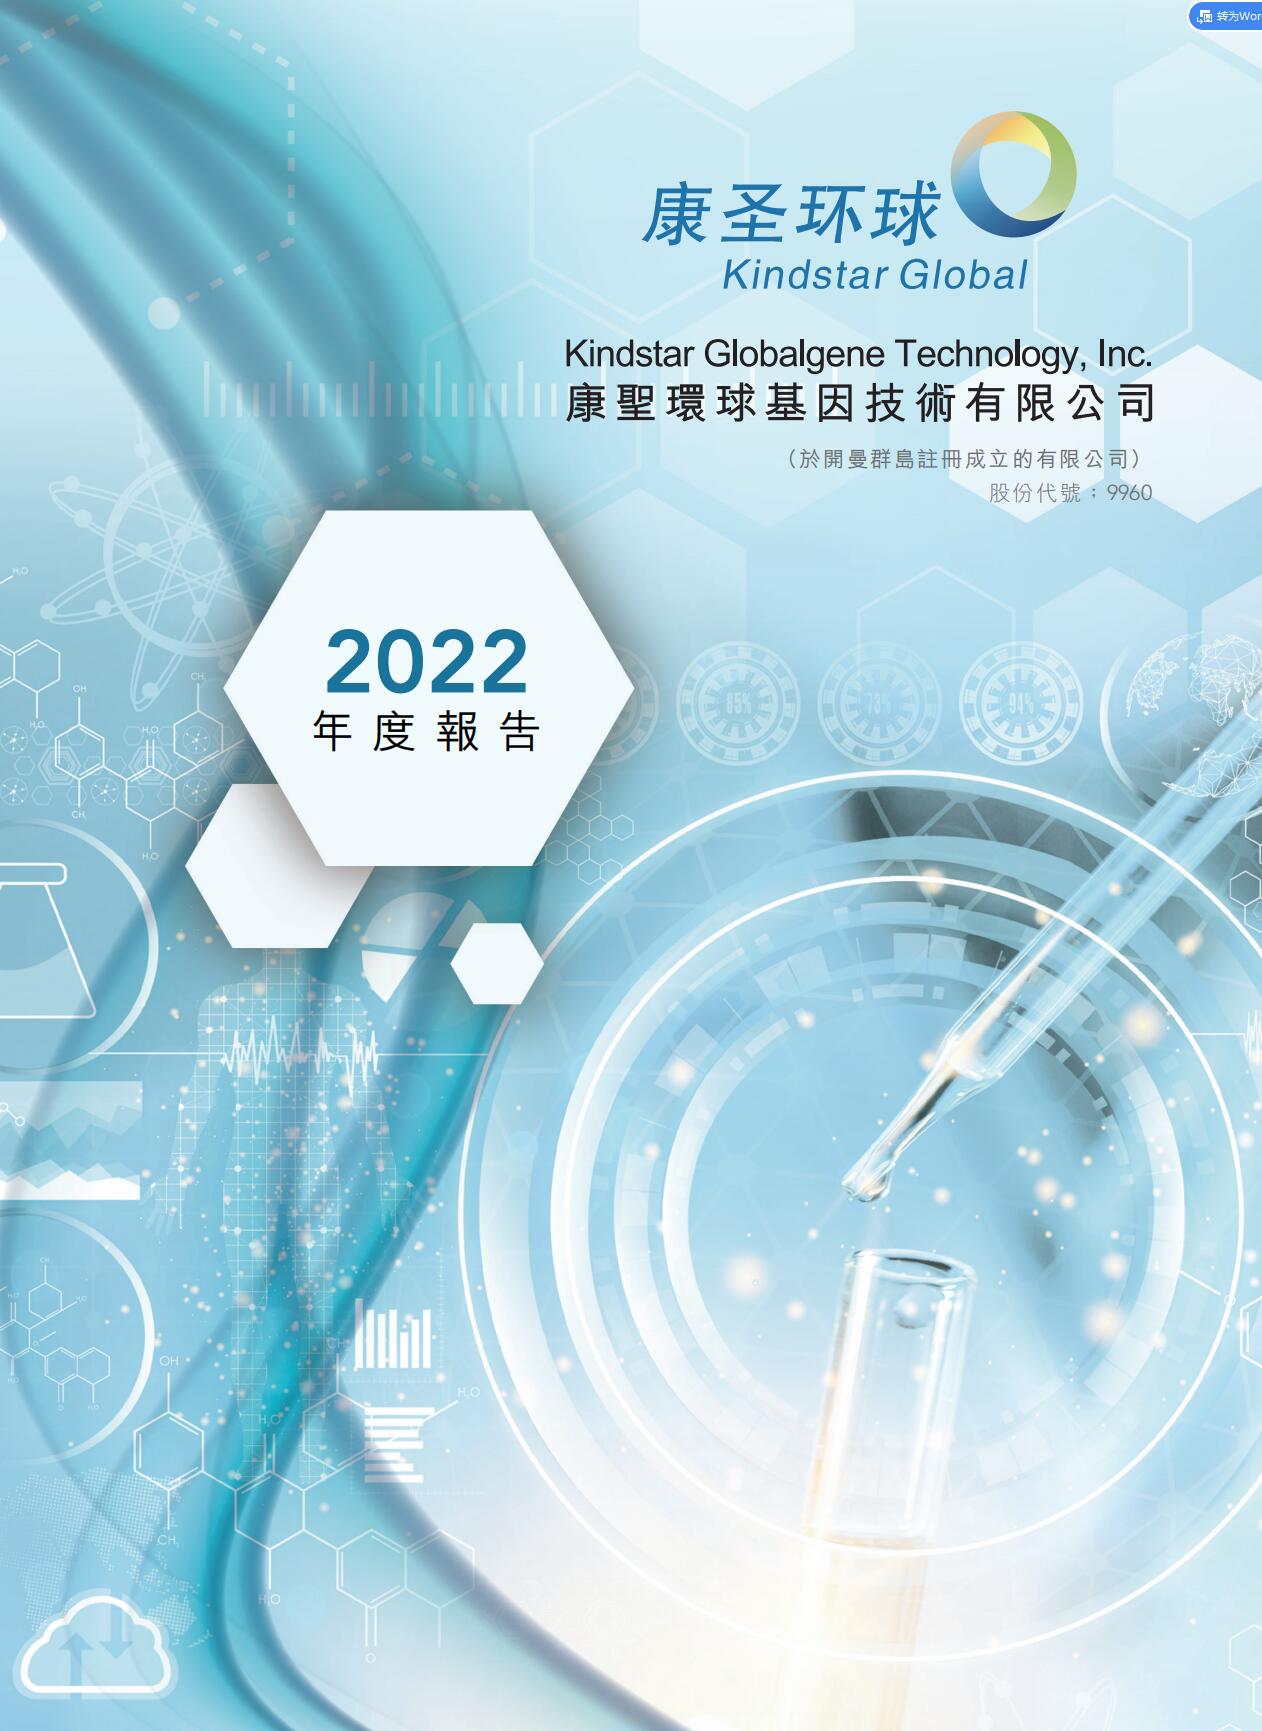 2022 年度報告